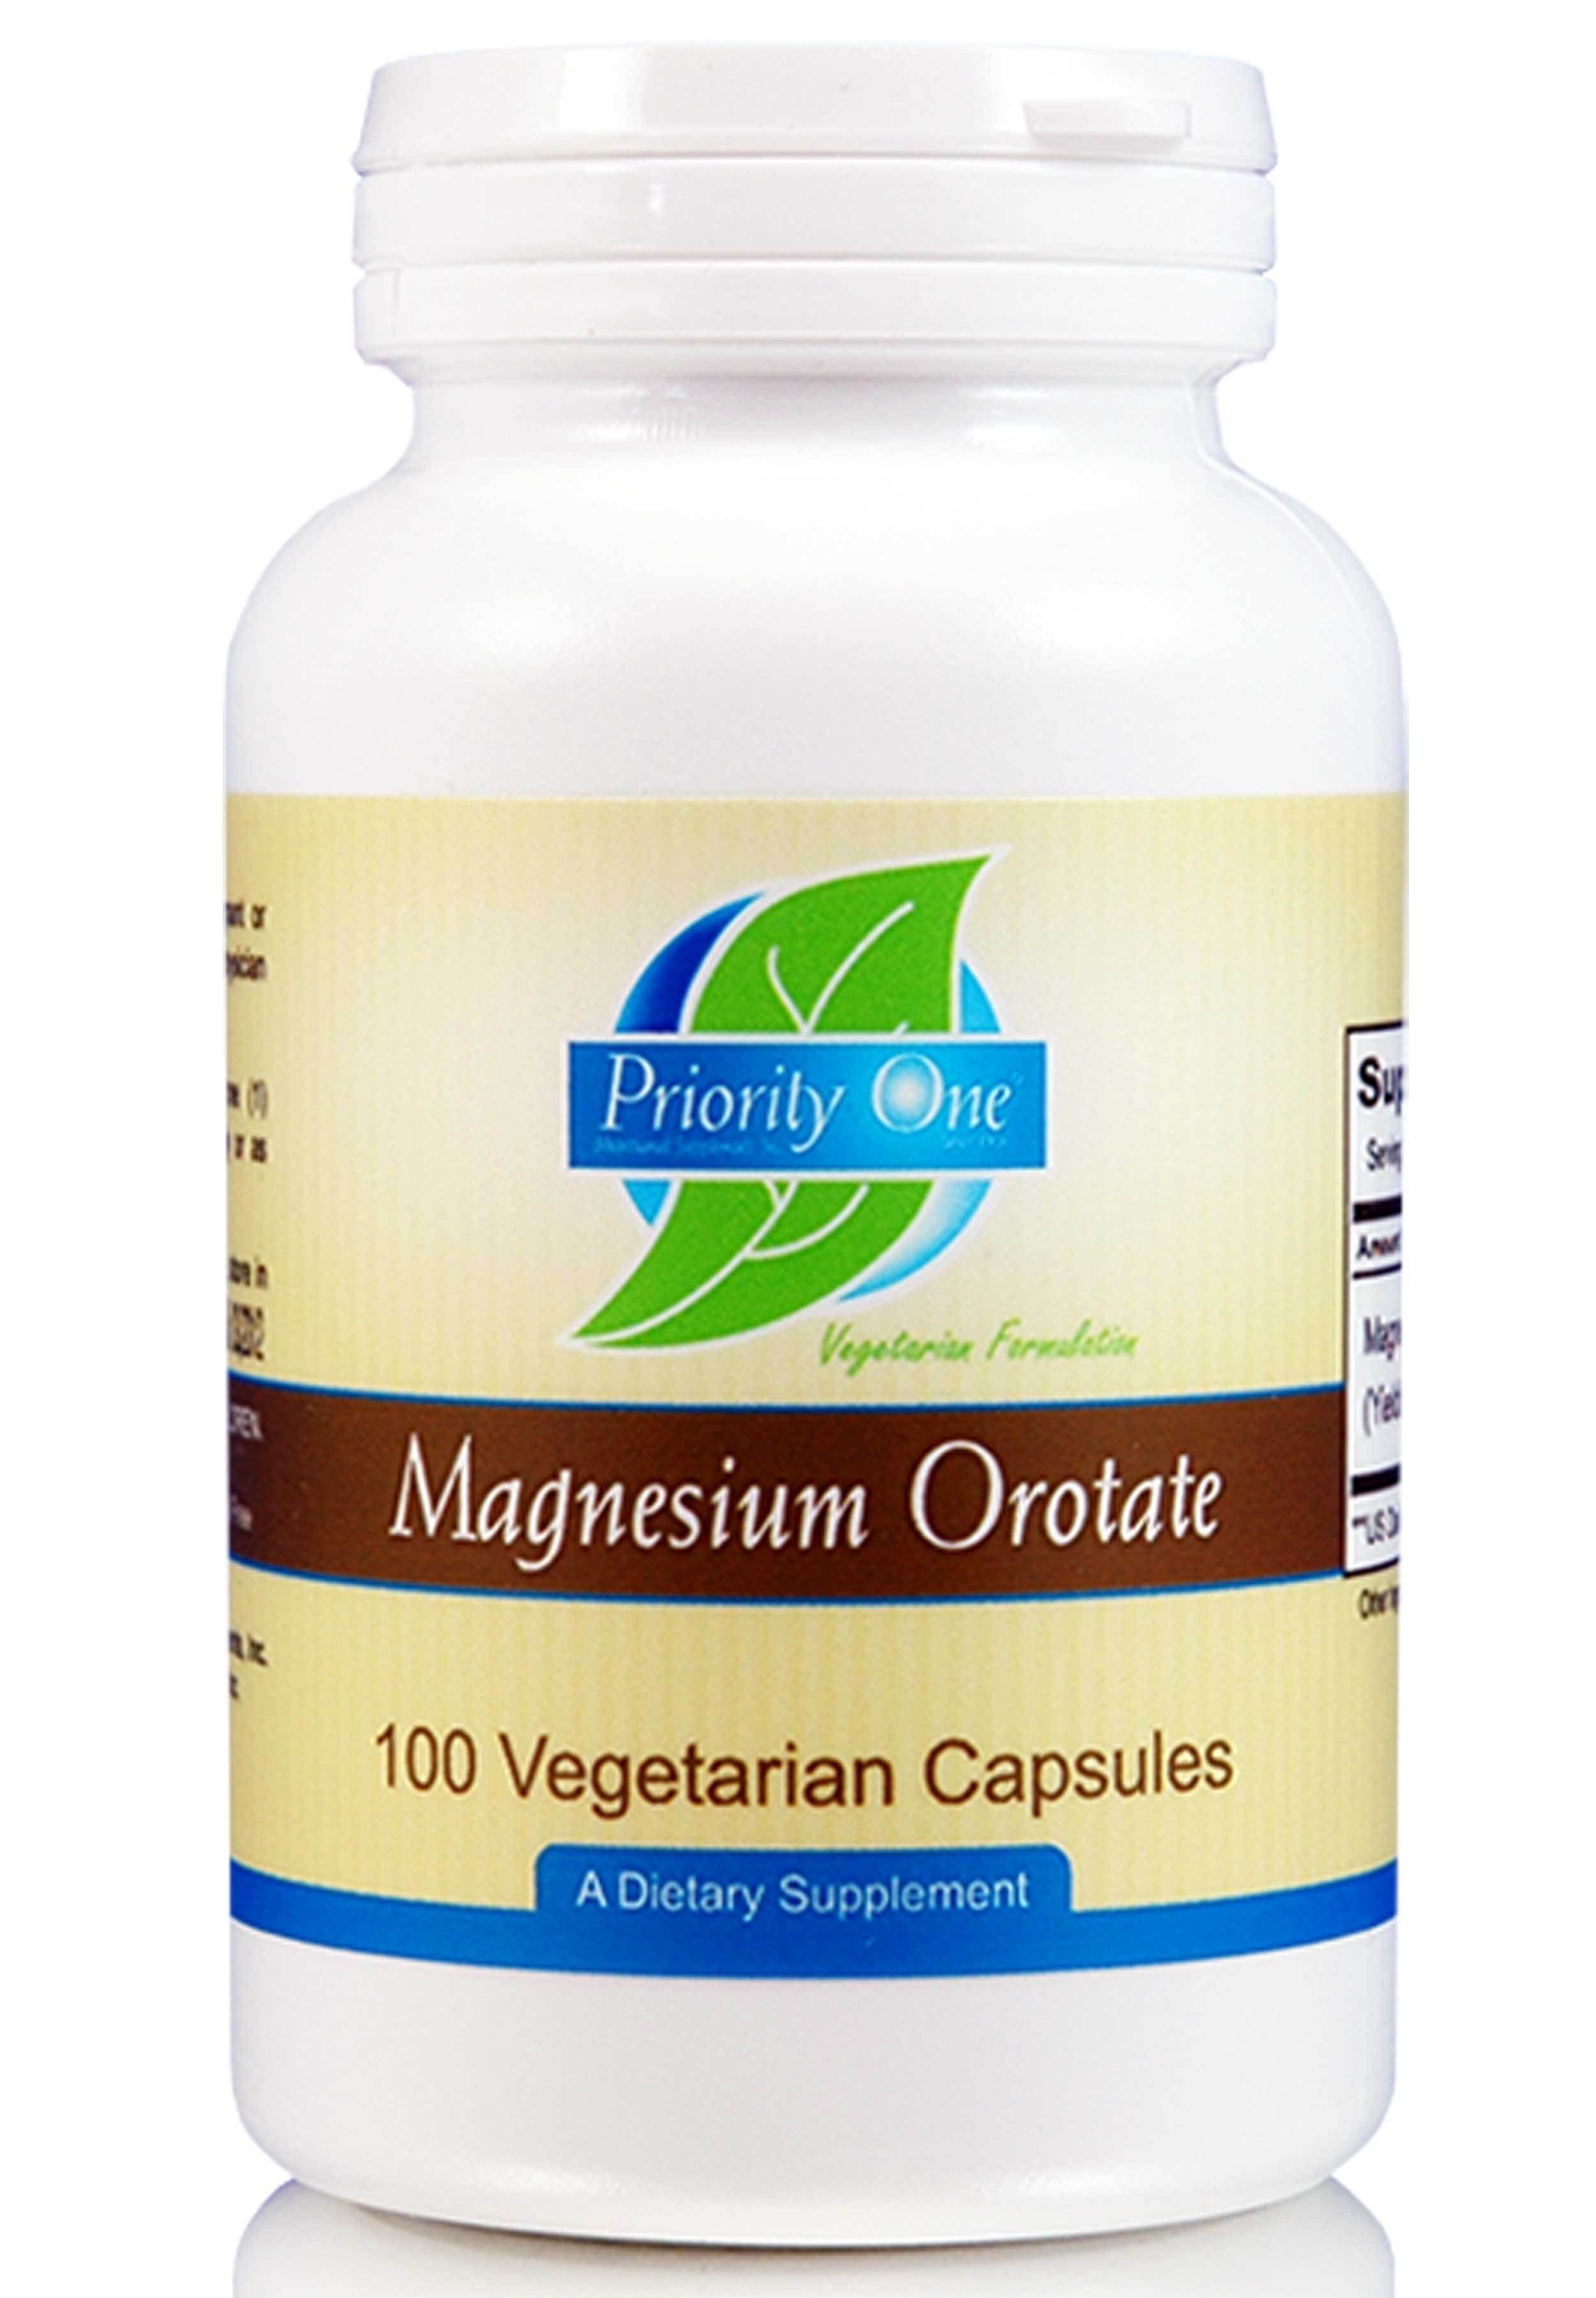 Priority One Magnesium Orotate